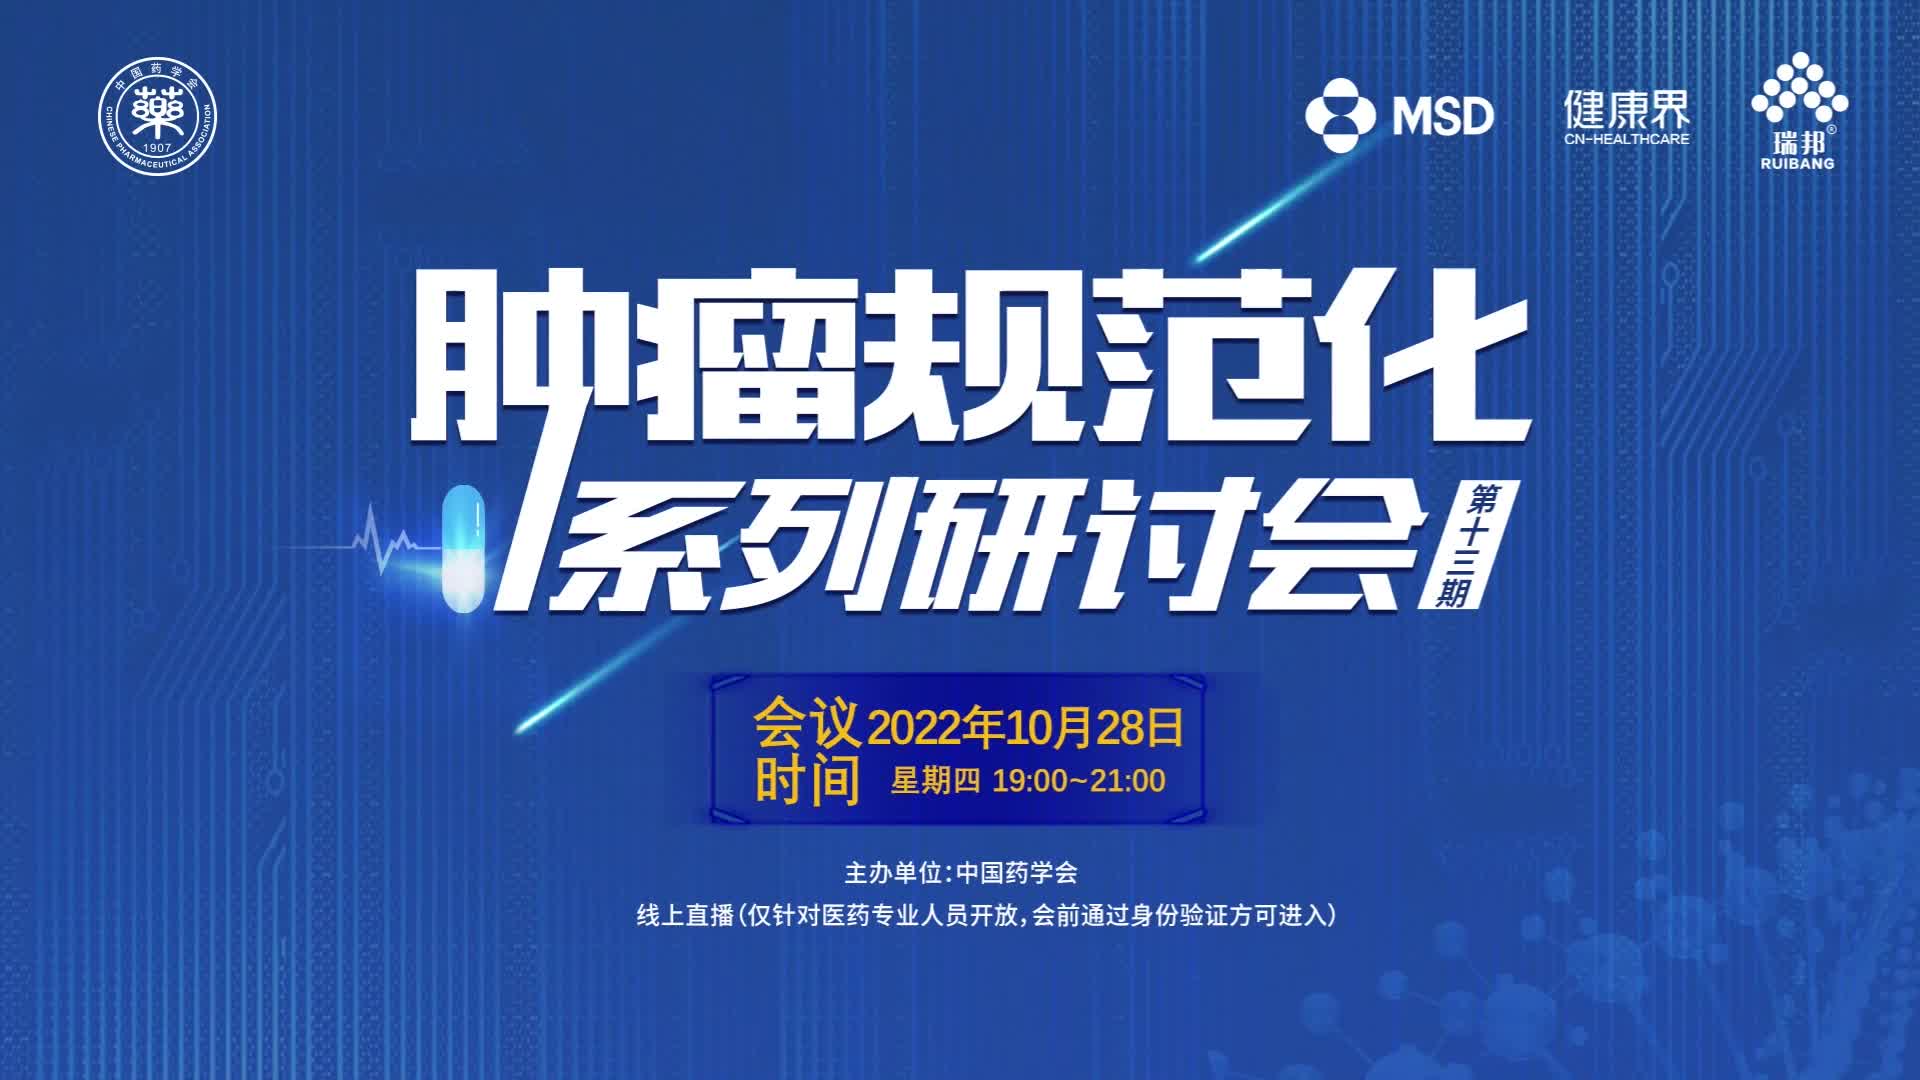 中国药学会肿瘤规范化系列研讨会 第十三期